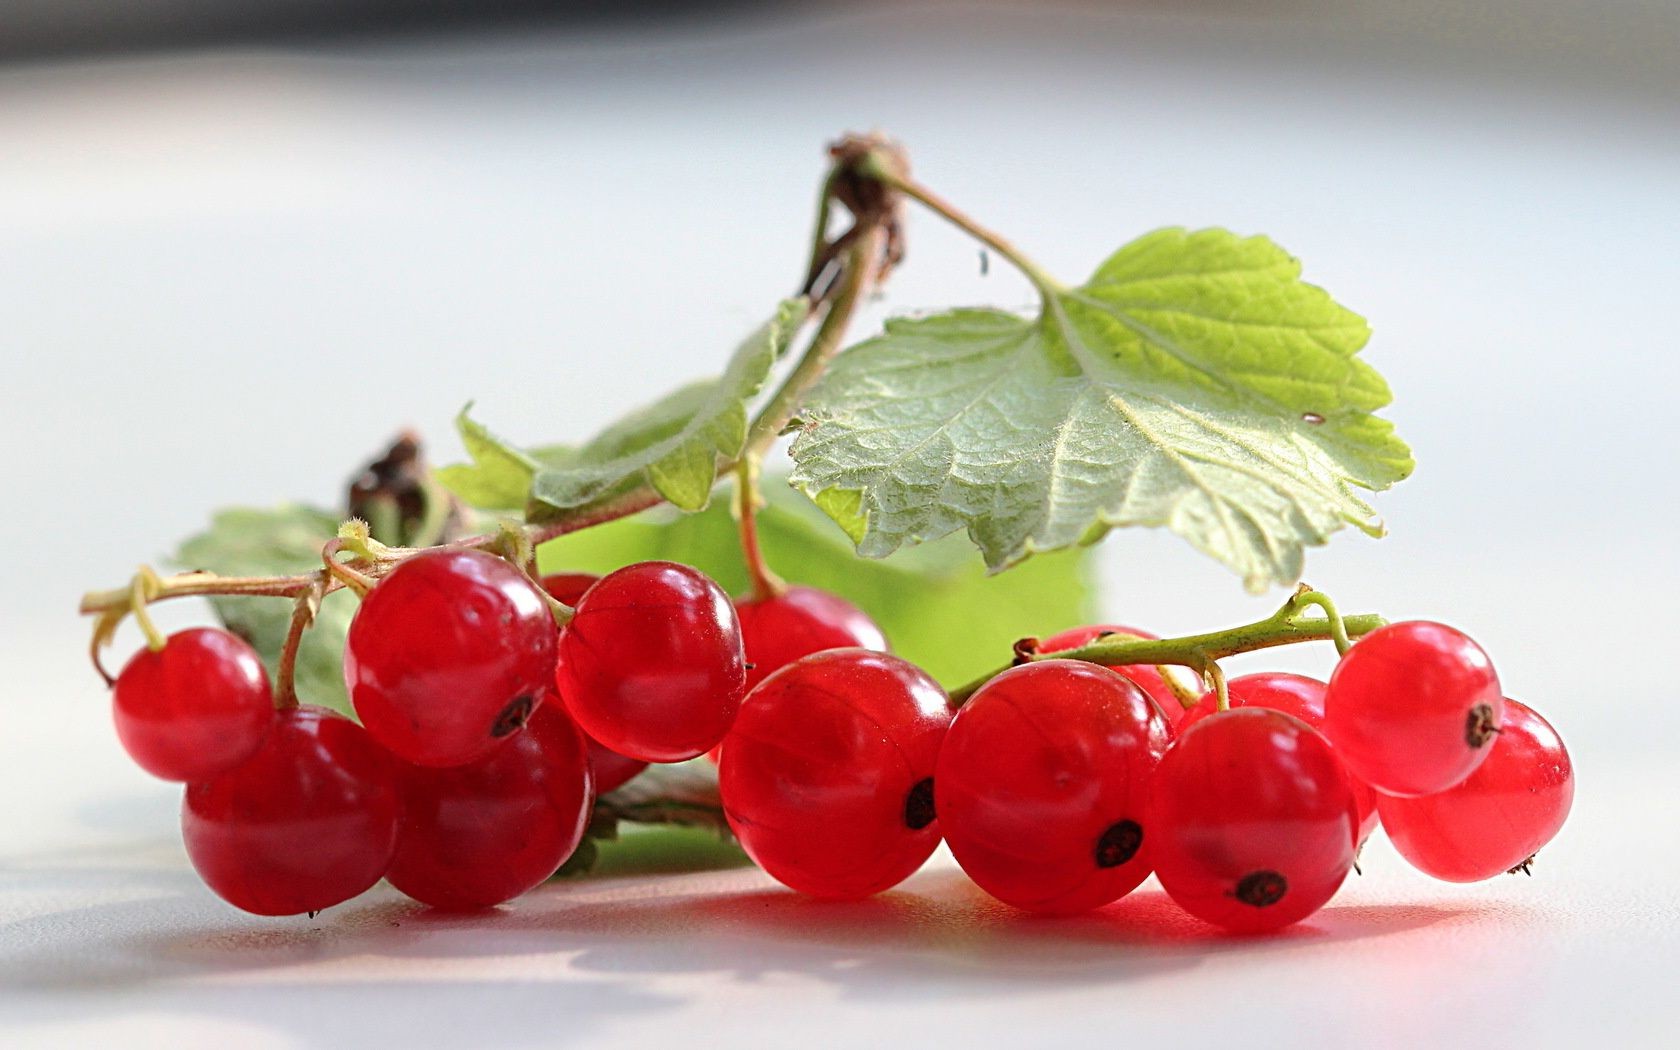 ягоды ягодка фрукты сочные еда здоровый вкусные лист вкусные здоровья питание диета смородины кондитерское изделие сладкий расти витамин куча природа кисло